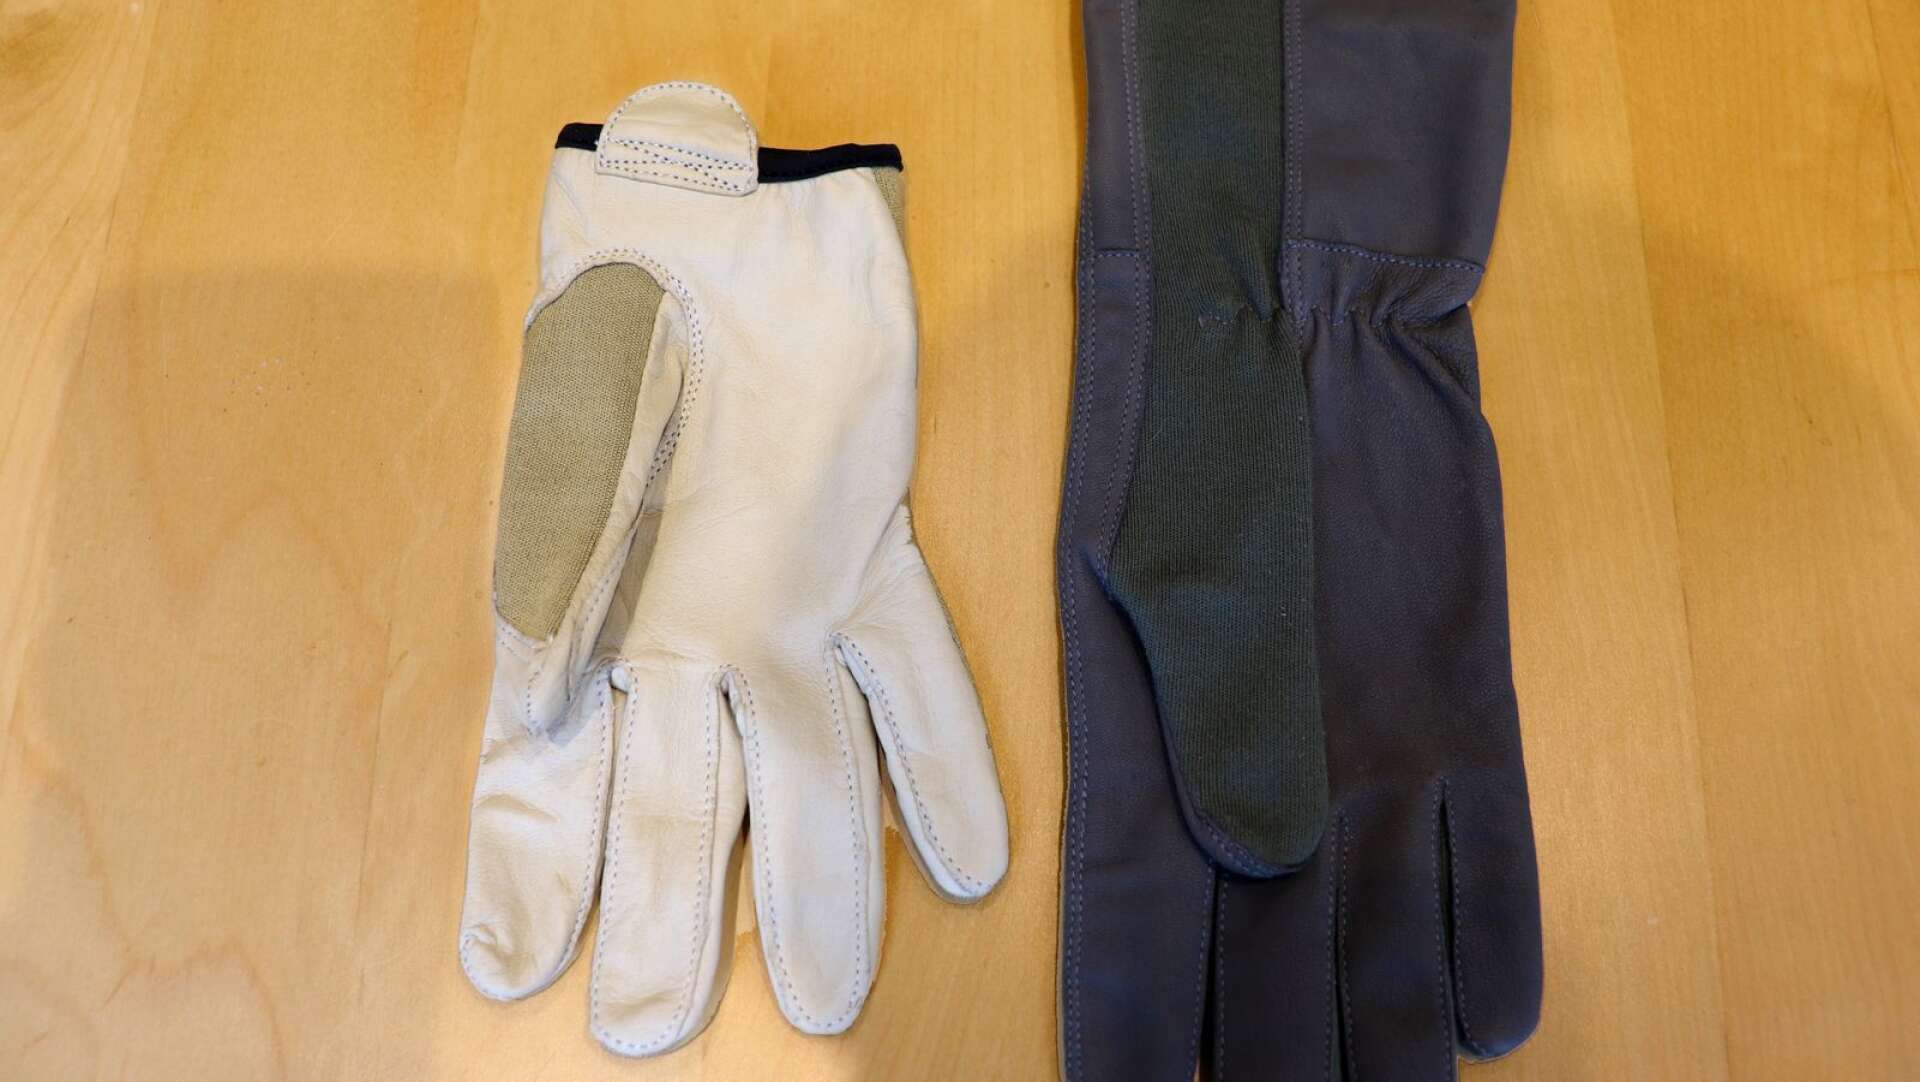 Granqvists i Hynboholm tillverkar och säljer bland annat handskar till militär personal.